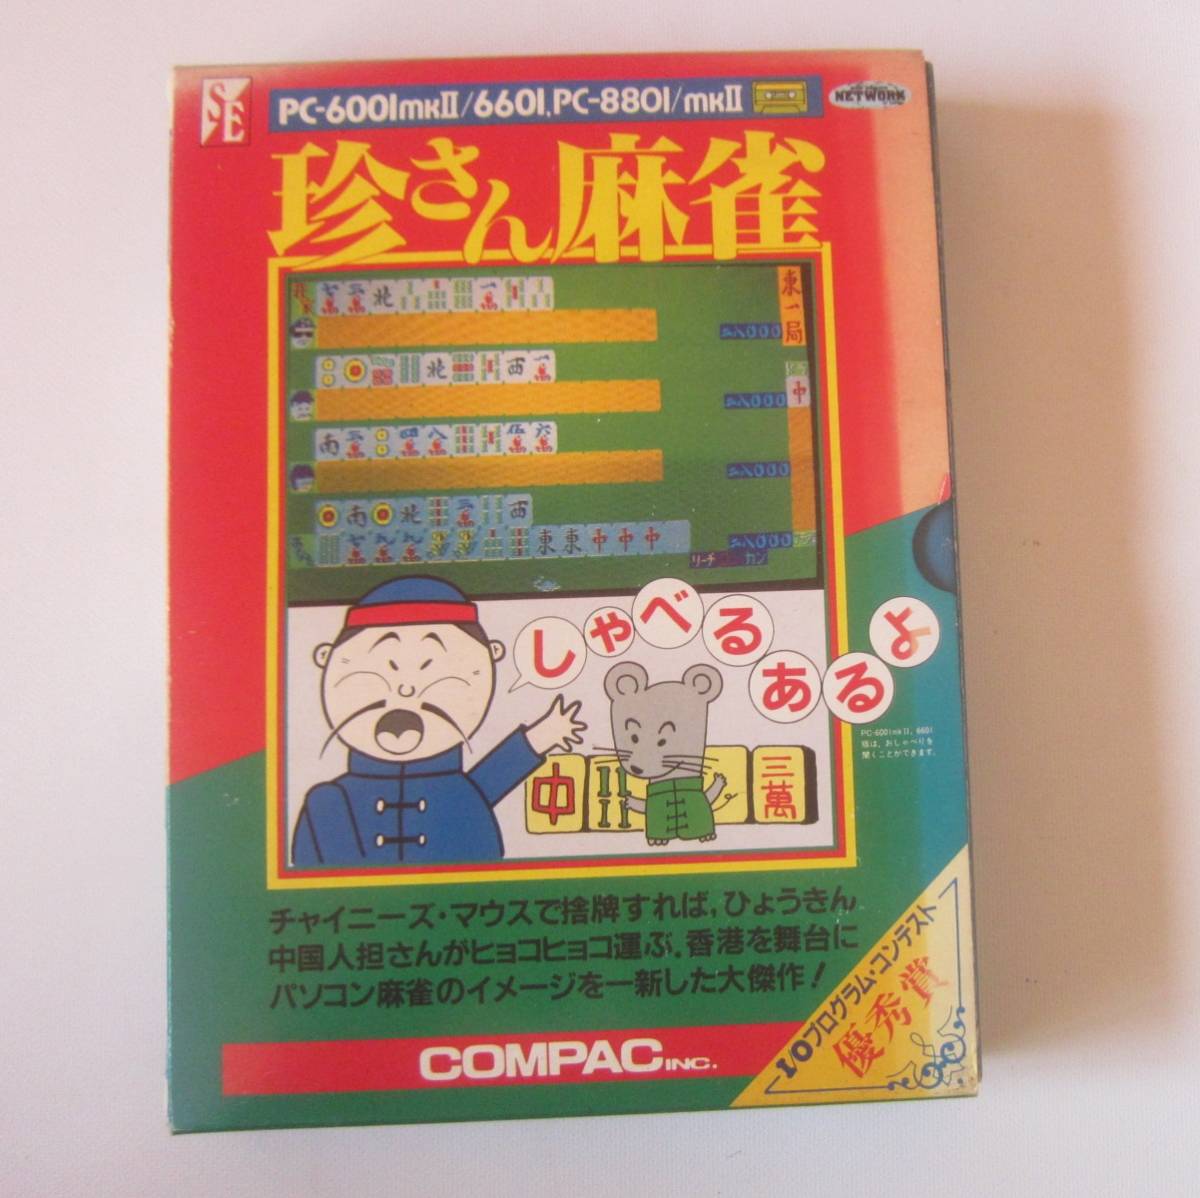 PC-6001mkⅡ/6601 PC-8801/mkⅡ 6601可 ゲームソフト 珍さん麻雀 取扱説明書付 カセット版 ジャンク